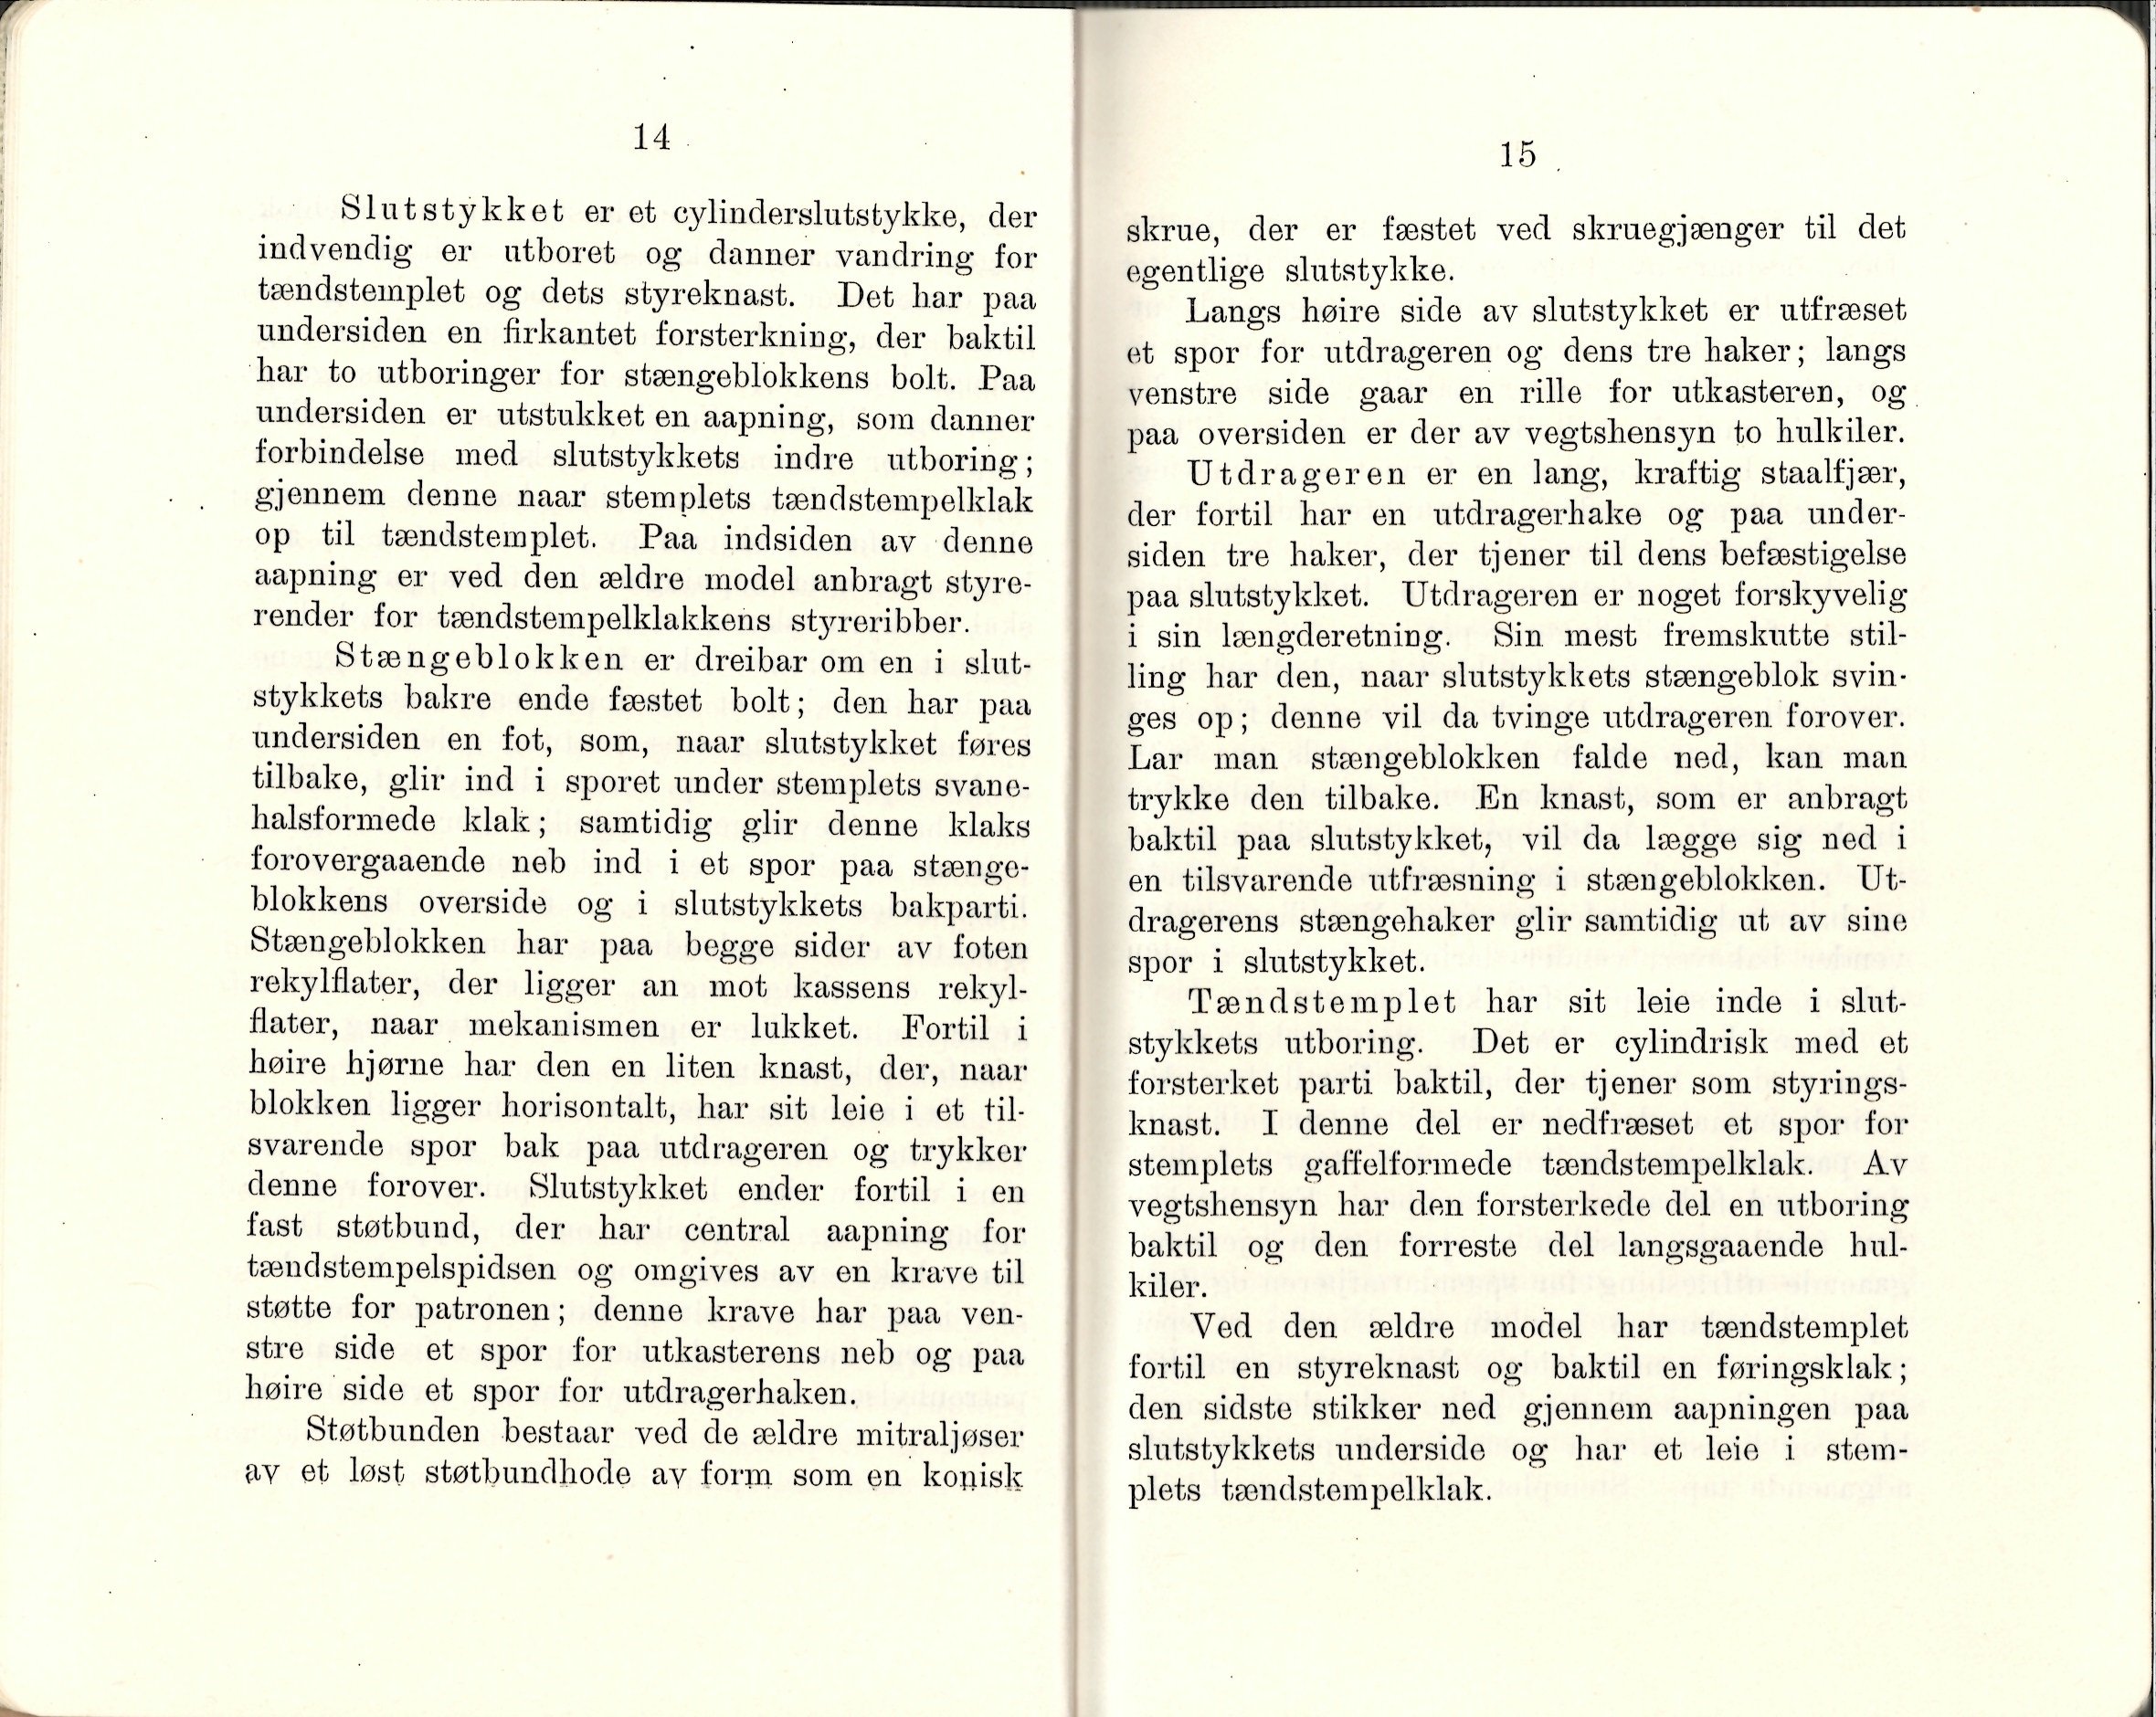 ./doc/reglement/Kav1910/Haandbok-Kav-Mitr-1910-9.jpg